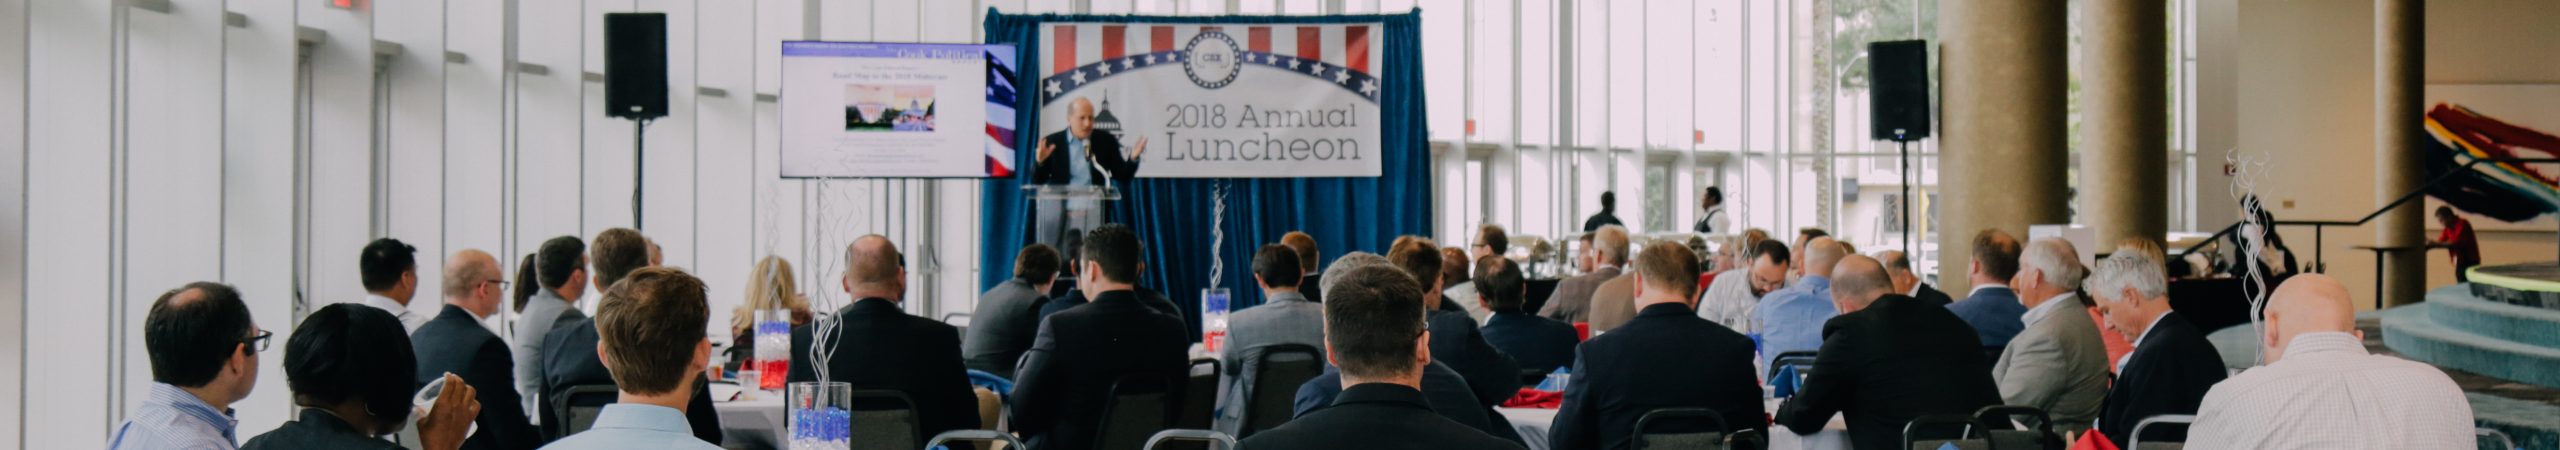 2018 CSX Annual Luncheon